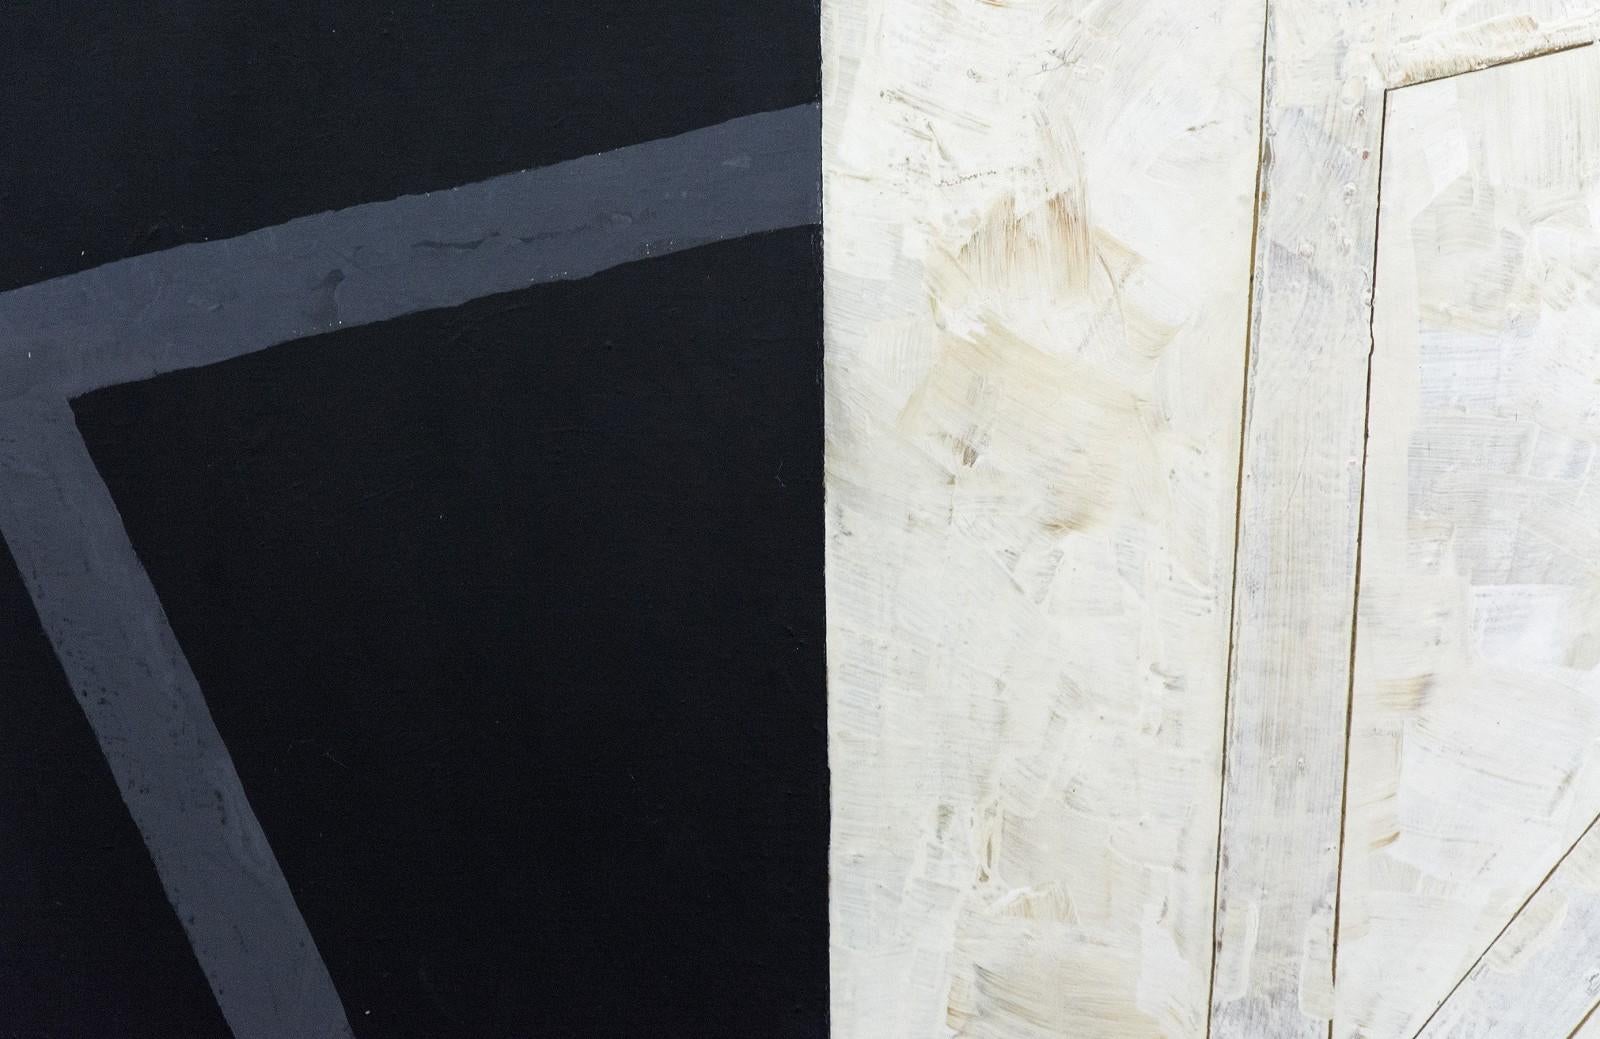 In diesem kraftvollen Gemälde von Otto Rogers überschneiden sich schräge Strukturen aus Moosgrün, Grau und strukturiertem Weiß in einer raffinierten Eometrie. Rogers Werk, das in einer kubistisch-konstruktivistischen Tradition wurzelt, wurde 1963